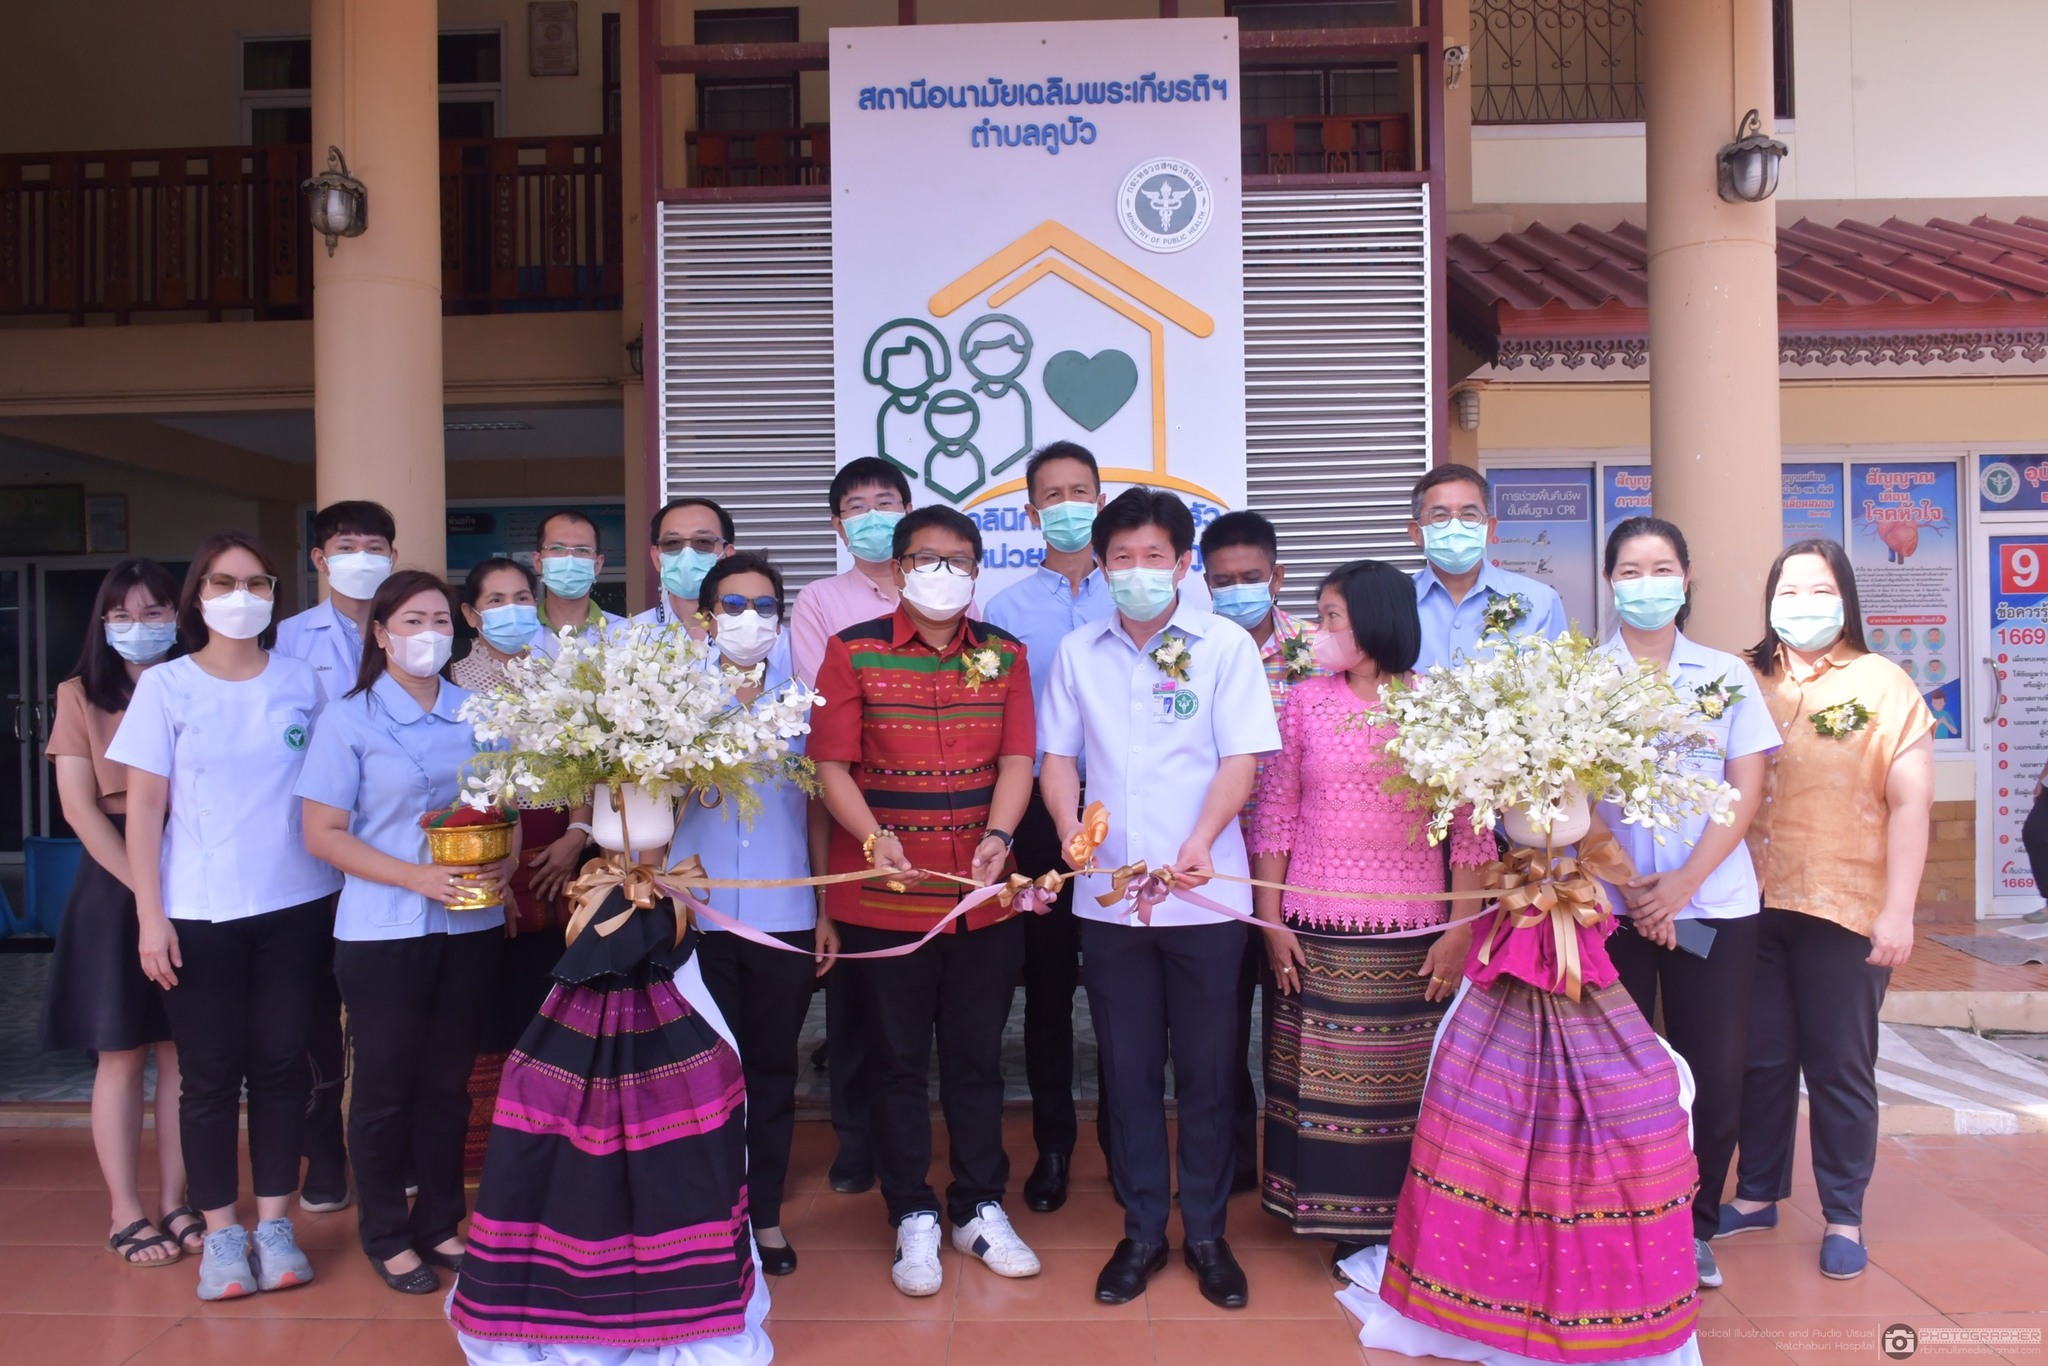 นพ.อนุกูล ไทยถานันดร์ ผู้อำนวยการโรงพยาบาลราชบุรี เป็นประธานพิธีเปิด “คลินิกหมอครอบครัว ตำบลคูบัว” วันที่ ๑ ธันวาคม ๒๕๖๕ ณ สถานีอนามัยเฉลิมพระเกียรติ 60 พรรษา นวมินทราชินี และโรงพยาบาลส่งเสริมสุขภาพตำบลบ้านคูบัว